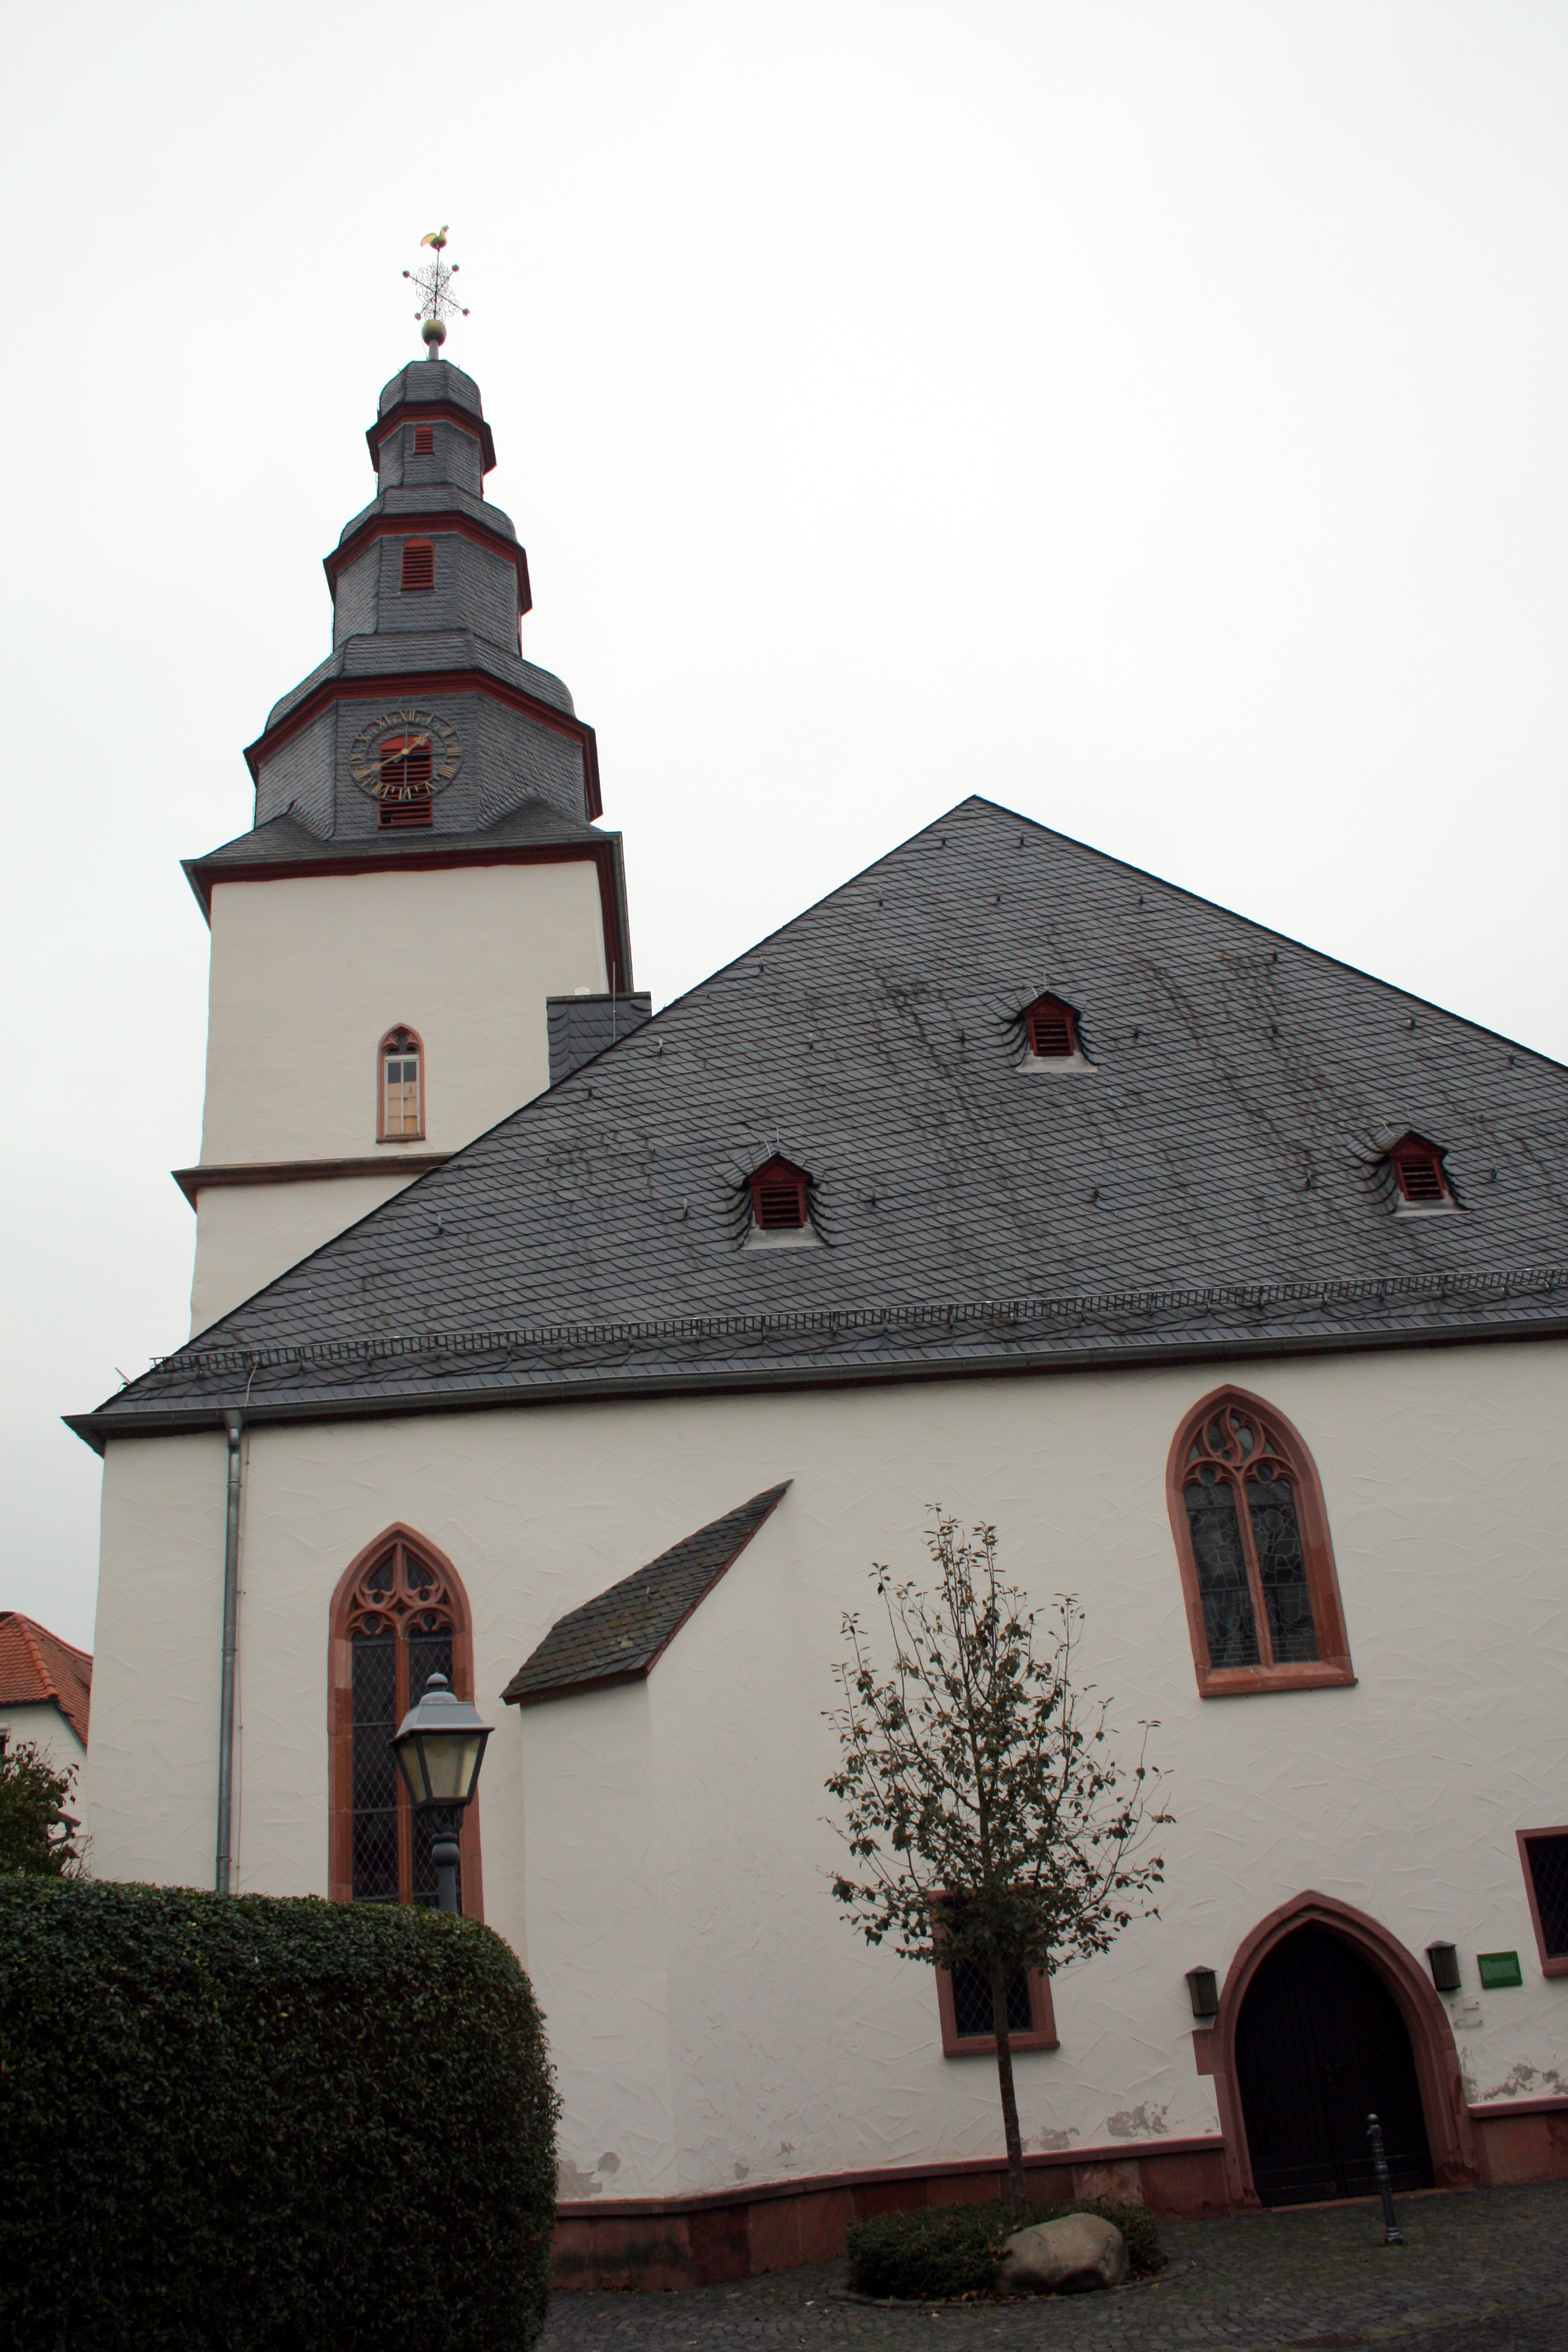 Stiftskirche Windecken.
